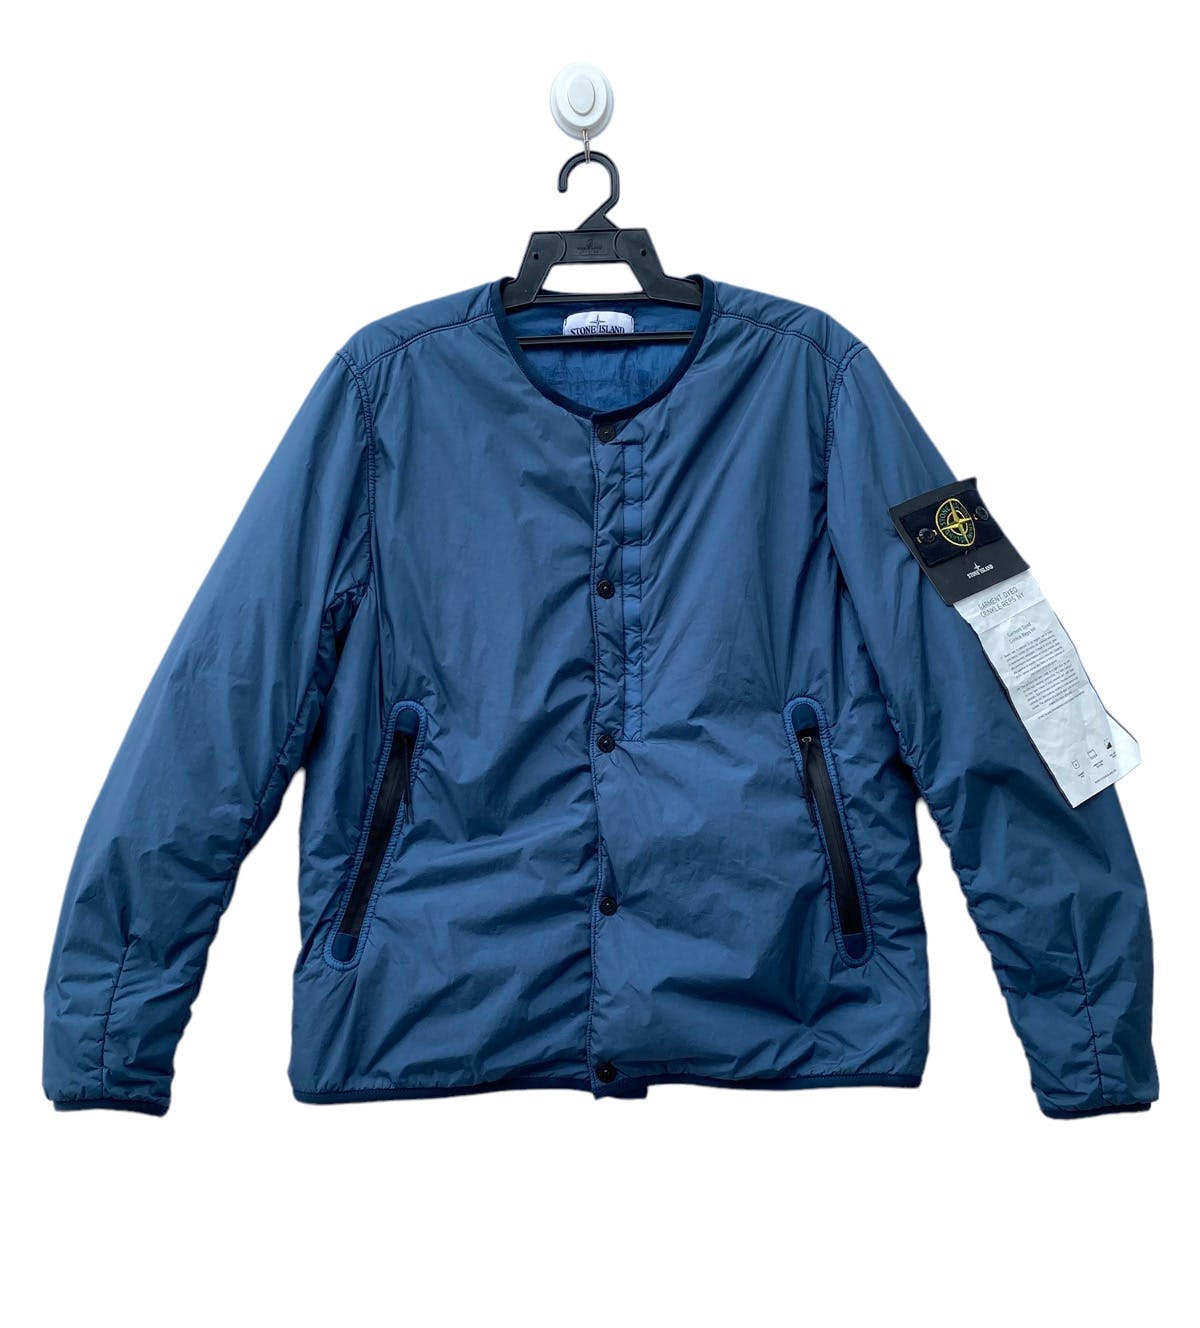 STONE ISLAND garment dyed crinkle reps ny blouson jacket - 1